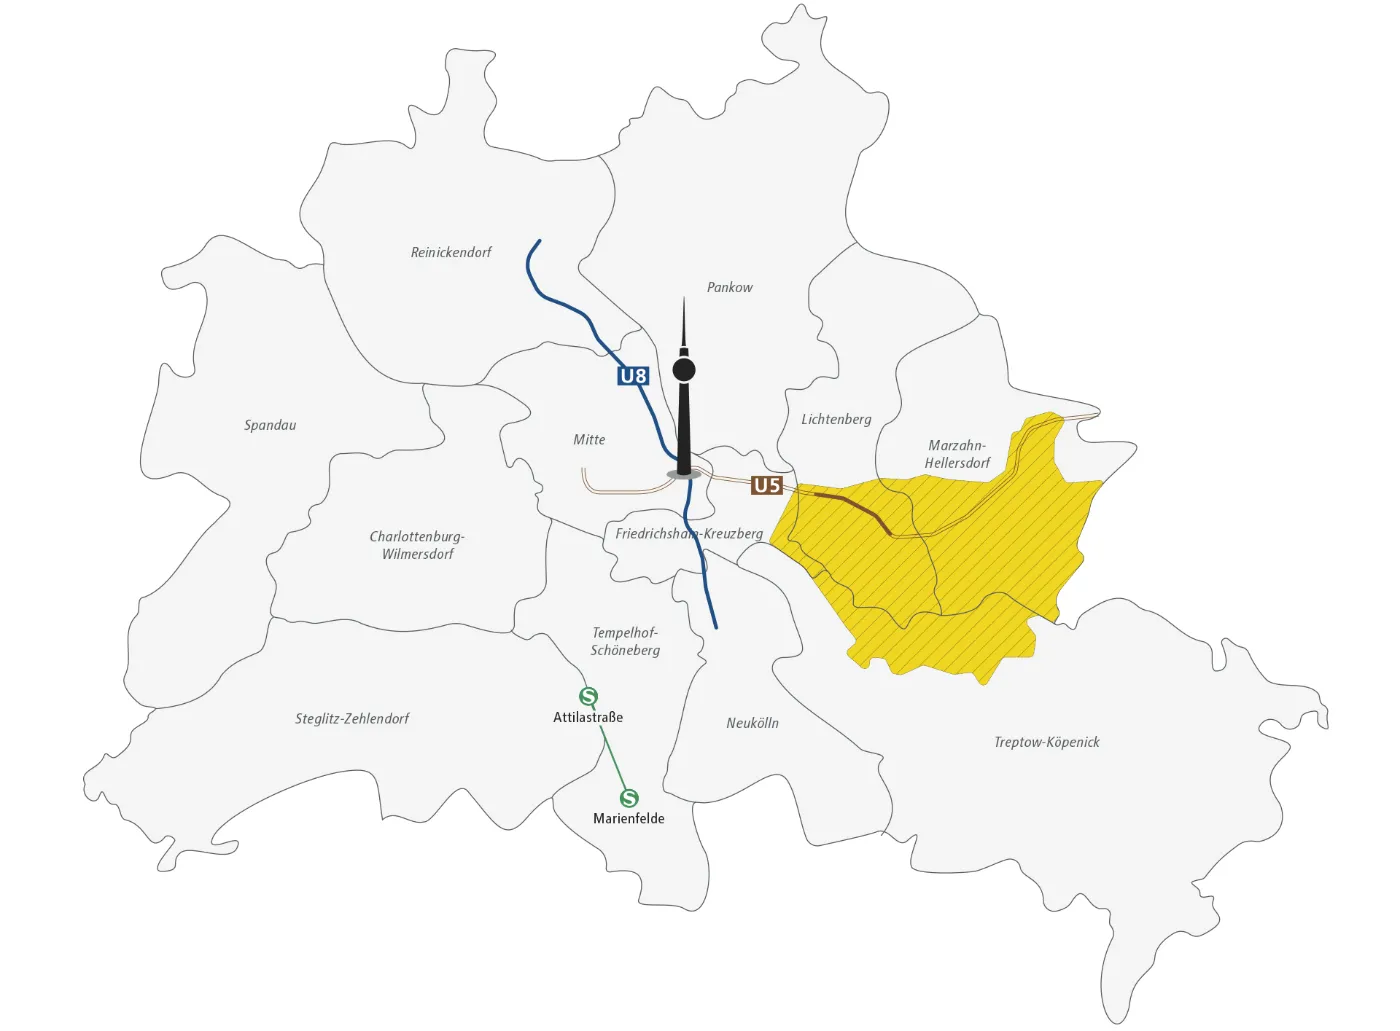 Das Bild zeigt eine Skizze von Berlin und seinen Bezirken. Der Fernsehturm ist zur Orientierung im Bezirk Mitte eingezeichnet. Neben der Unterteilung in die Bezirke, die namentlich aufgeführt sind, sind außerdem das Bediengebiet des BVG Muva in Teilen der Bezirke Lichtenberg, Marzahn-Hellersdorf und Treptow-Köpenick sowie entlang der U8, an Teilen der U5 und zwischen S Marienfelde und S Attilastraße eingezeichnet.